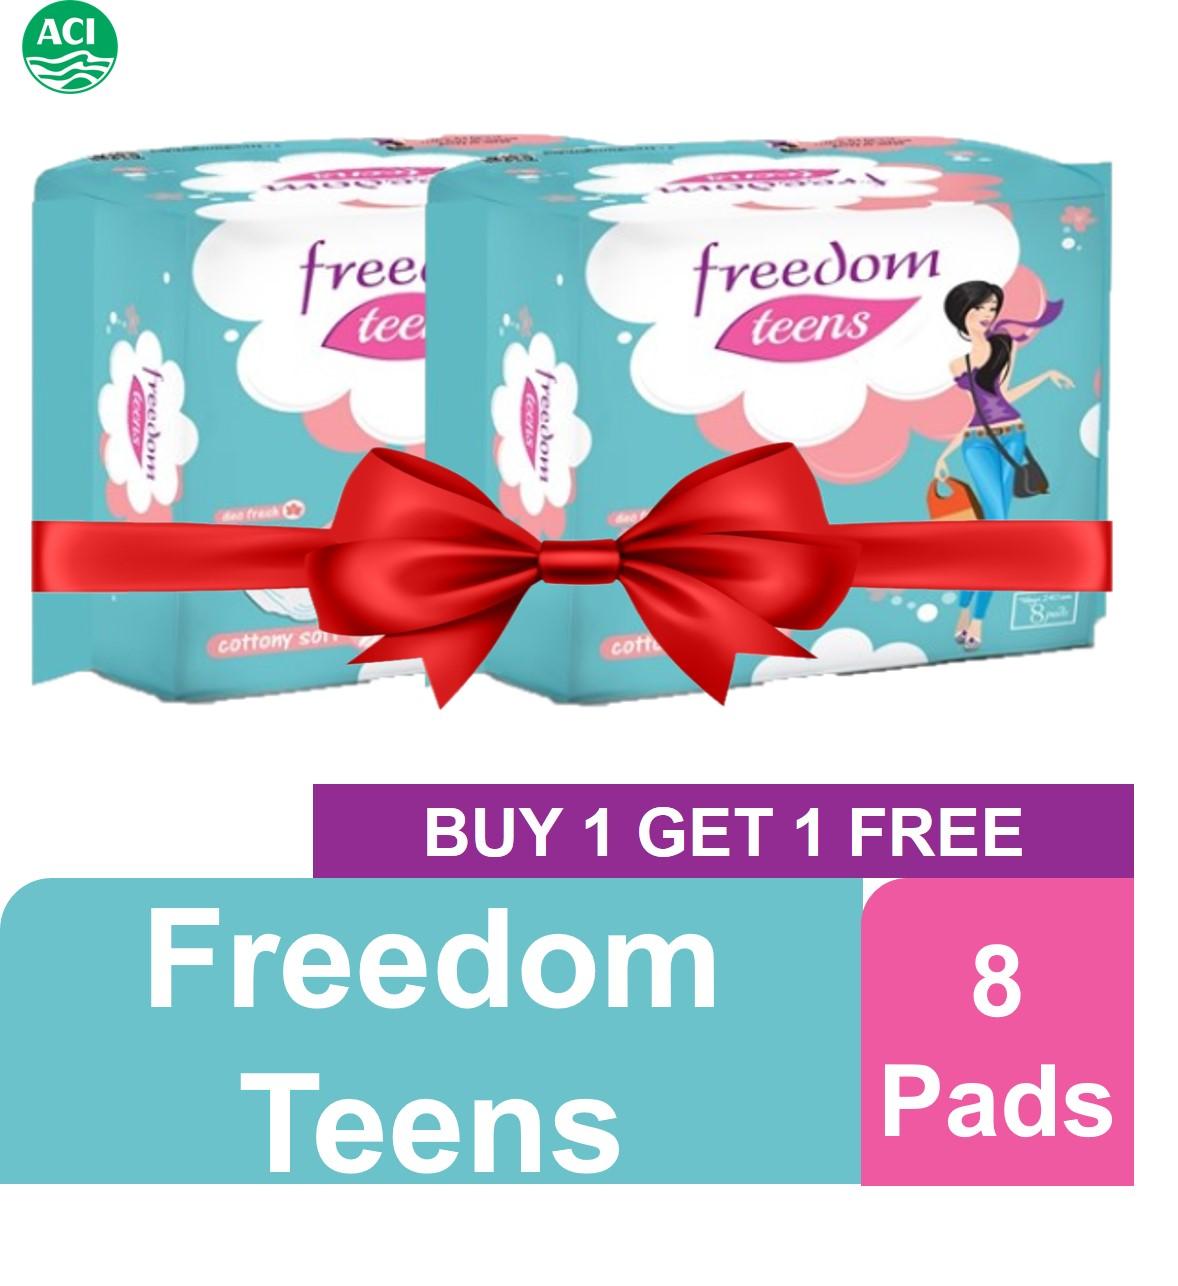 Freedom Teens 8 pads (Buy 1 Get 1)